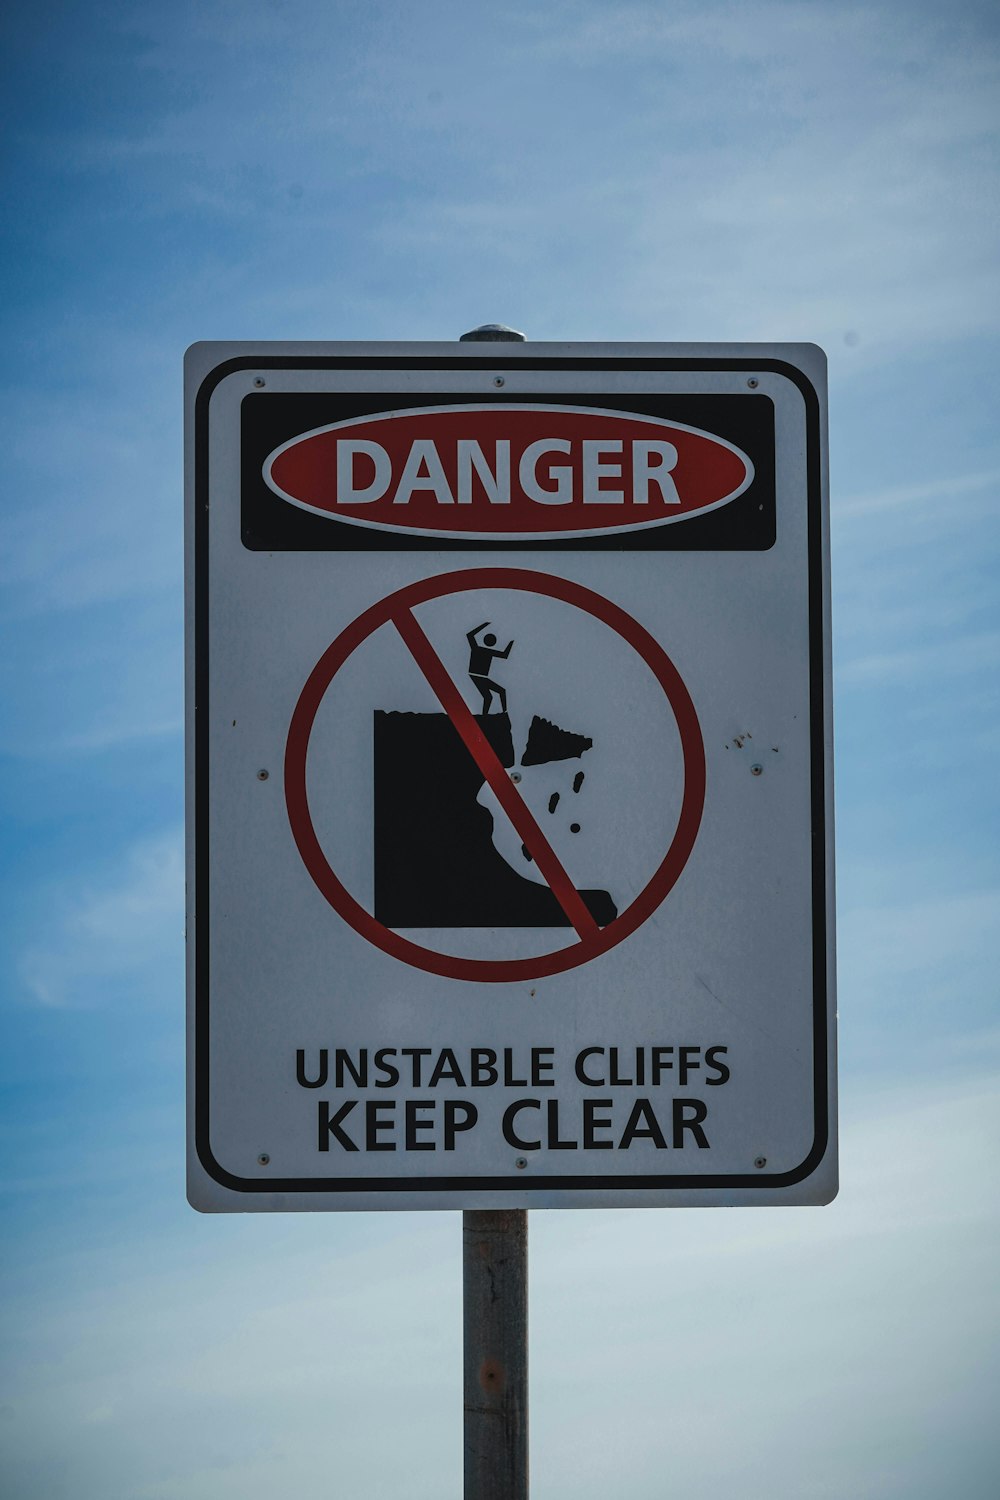 불안정한 절벽의 위험을 경고하는 표지판